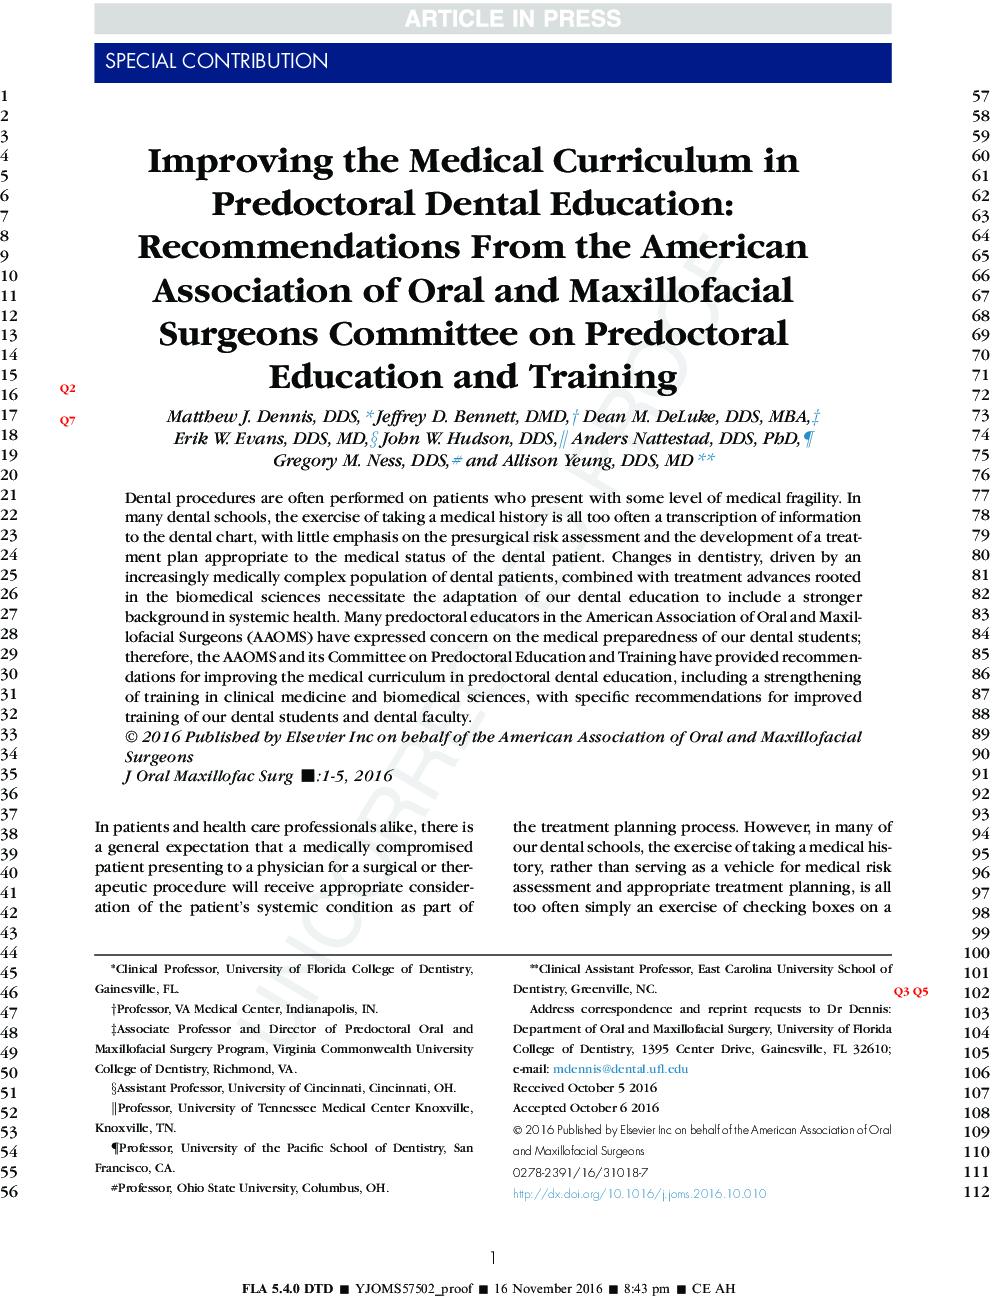 بهبود برنامه درسی پزشکی در آموزش دندانپزشکی پیش دبستانی: توصیه های انجمن جراحان دهان و فک و صورت در آموزش و پرورش پیش دبستانی 